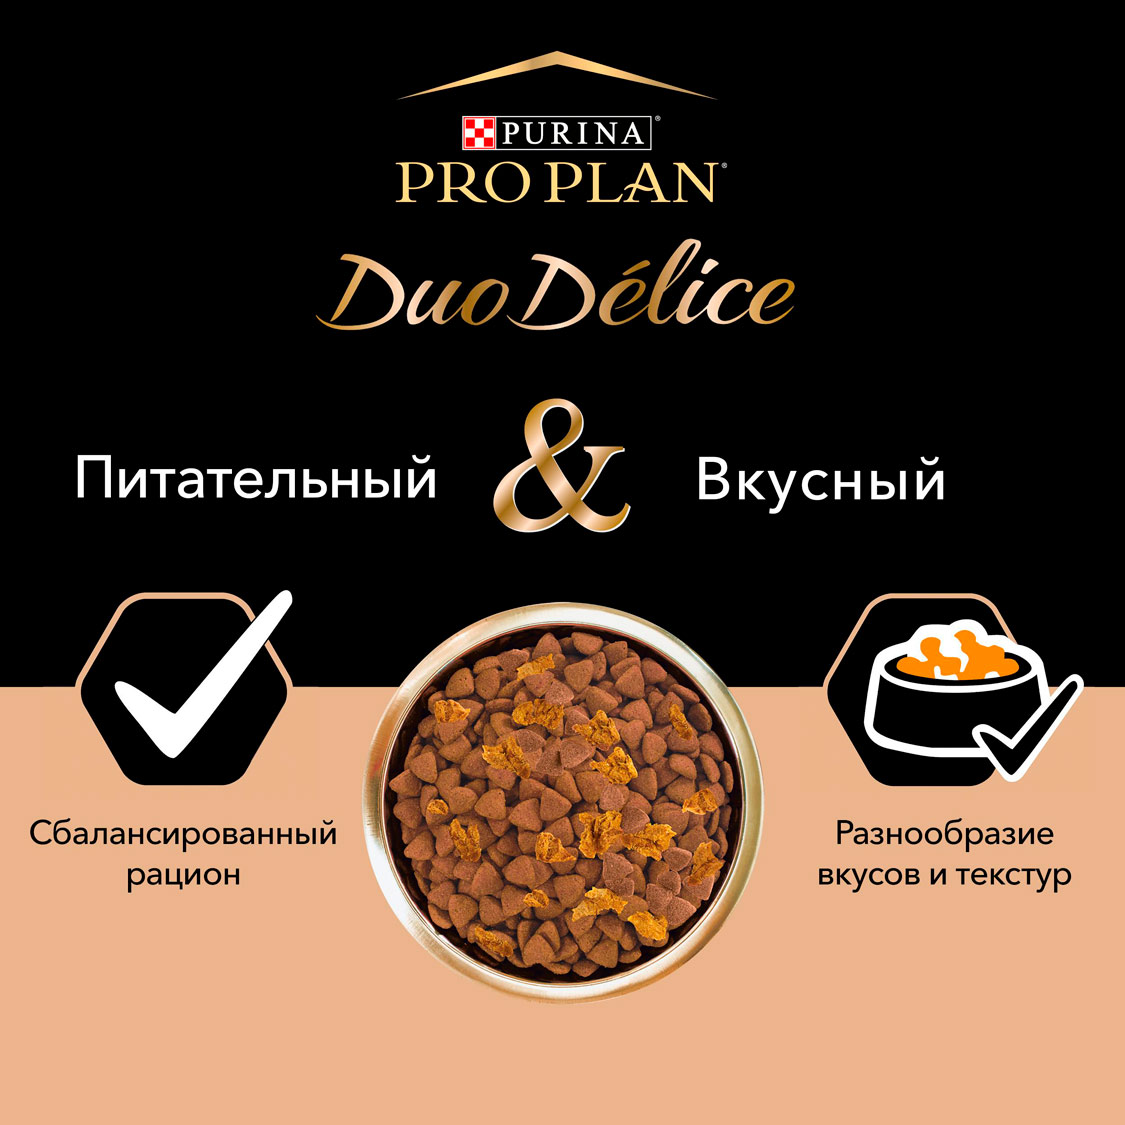 Pro plan сухой корм с высоким содержанием говядины duo delice для взрослых собак средних и крупных пород